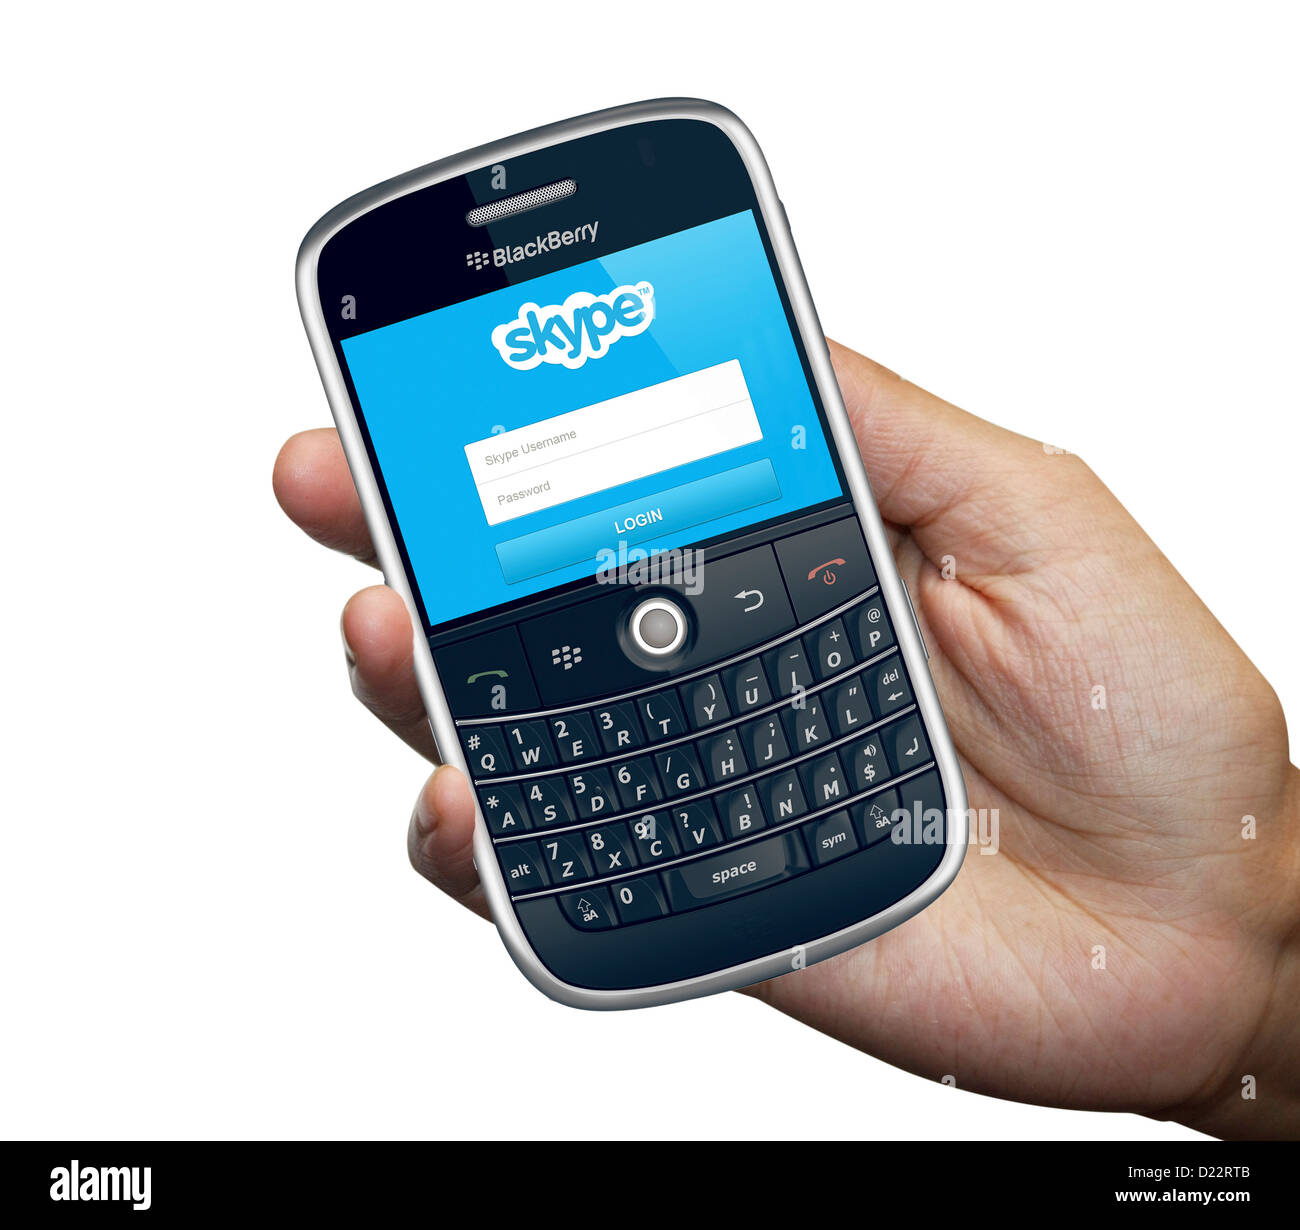 Una persona que tenga un teléfono inteligente Blackberry 9000 aislado en fondo blanco. Foto de stock